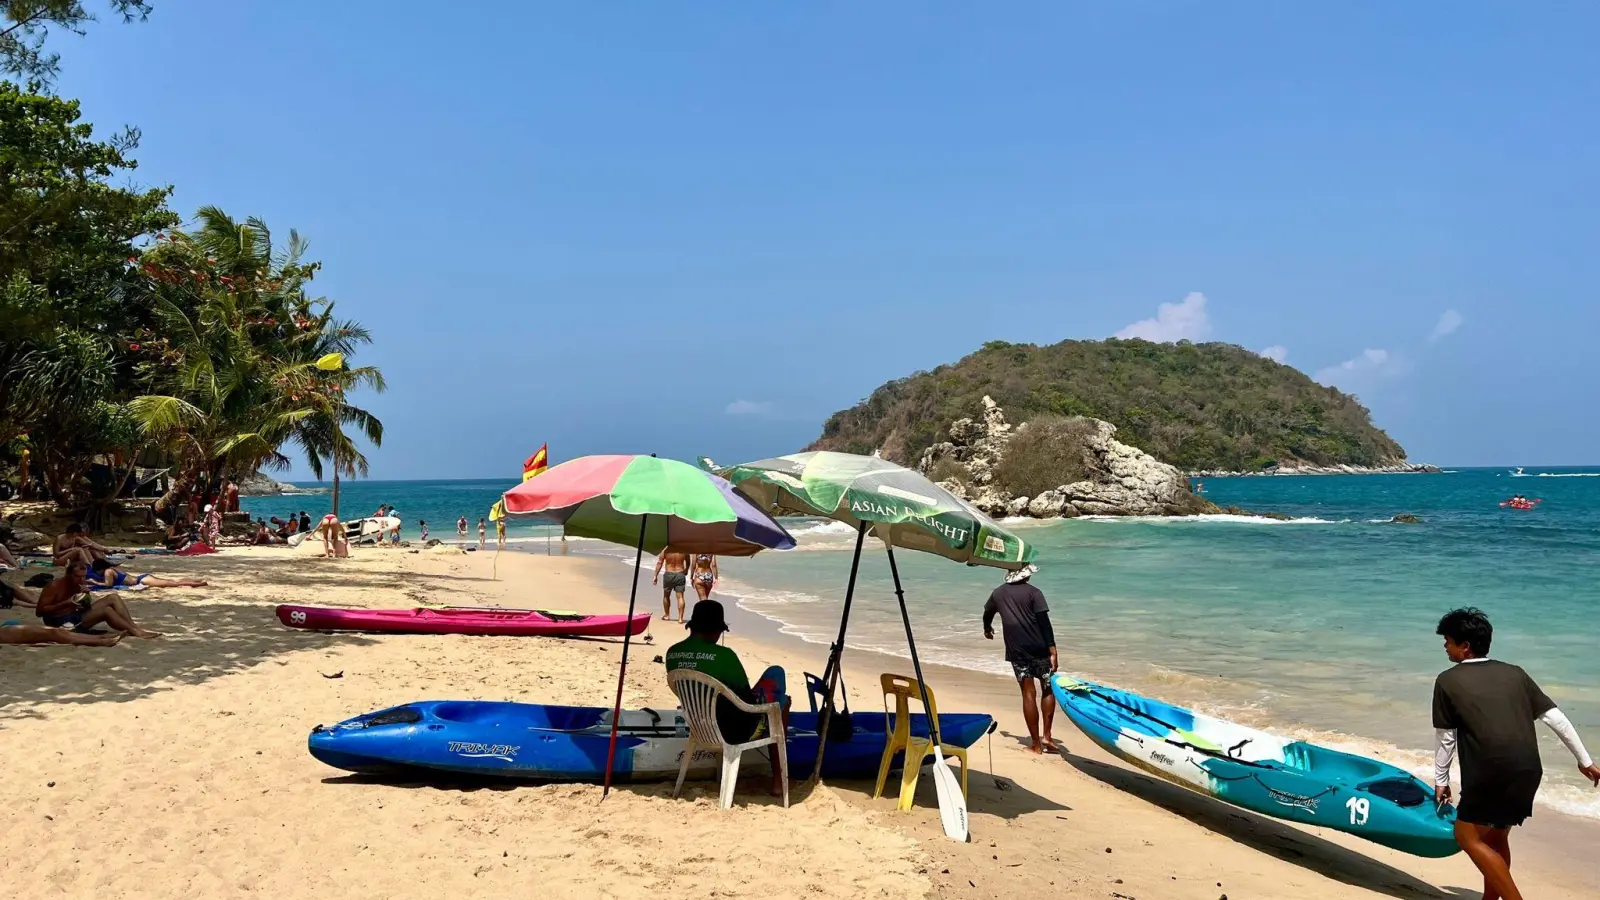 Trügerische Idylle am Strand von Phuket: Ein Mann schützt sich dort vor der brütend heißen Sonne. Seit Tagen leiden die Menschen in weiten Teilen Südostasiens unter ungewöhnlich starker Hitze. (Foto: Carola Frentzen/dpa)